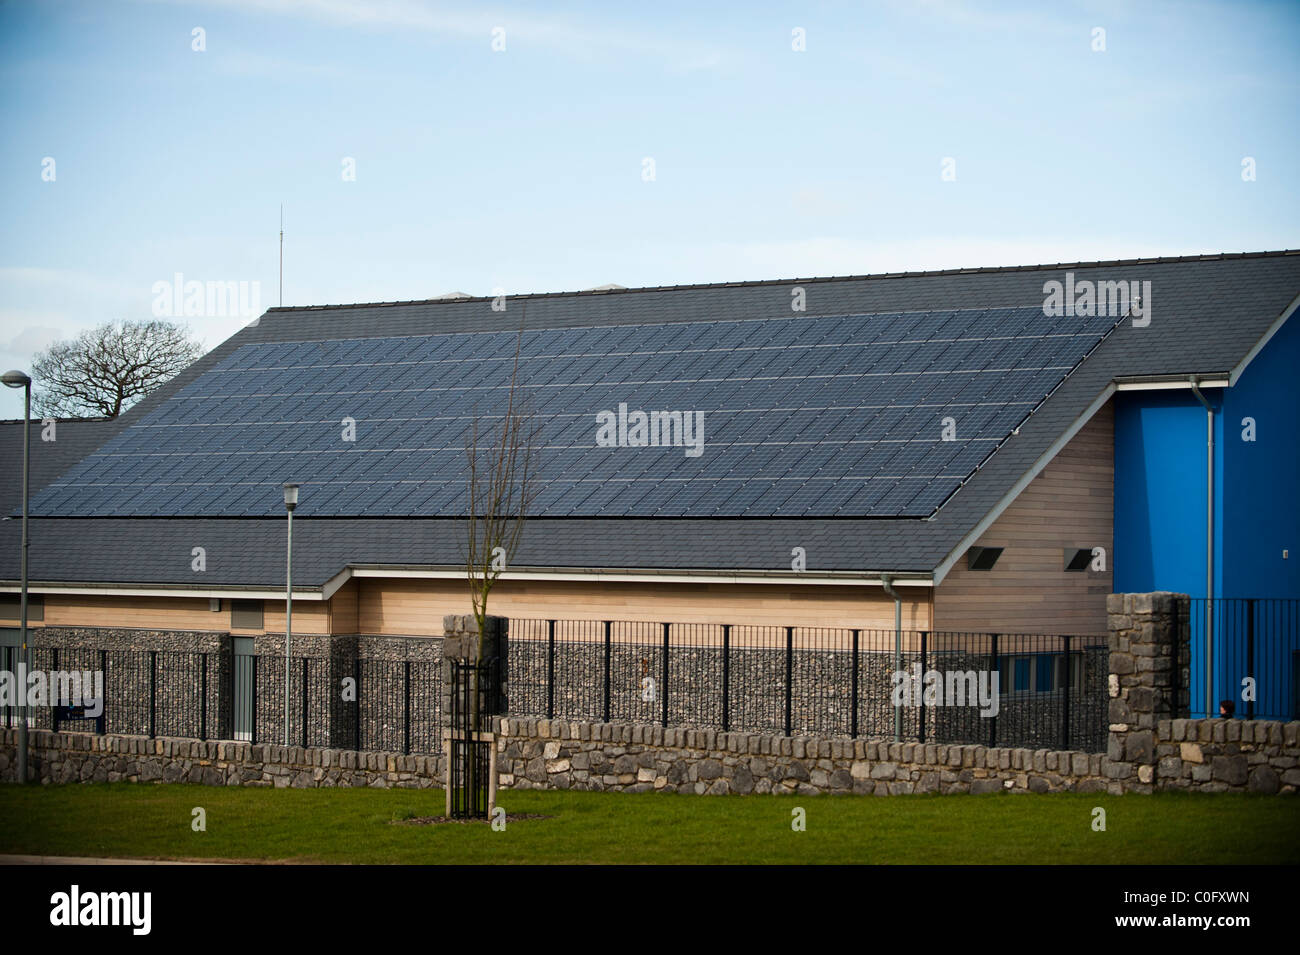 Photo Voltaic pannelli solari sul tetto di una scuola, Llangefni North Wales UK Foto Stock